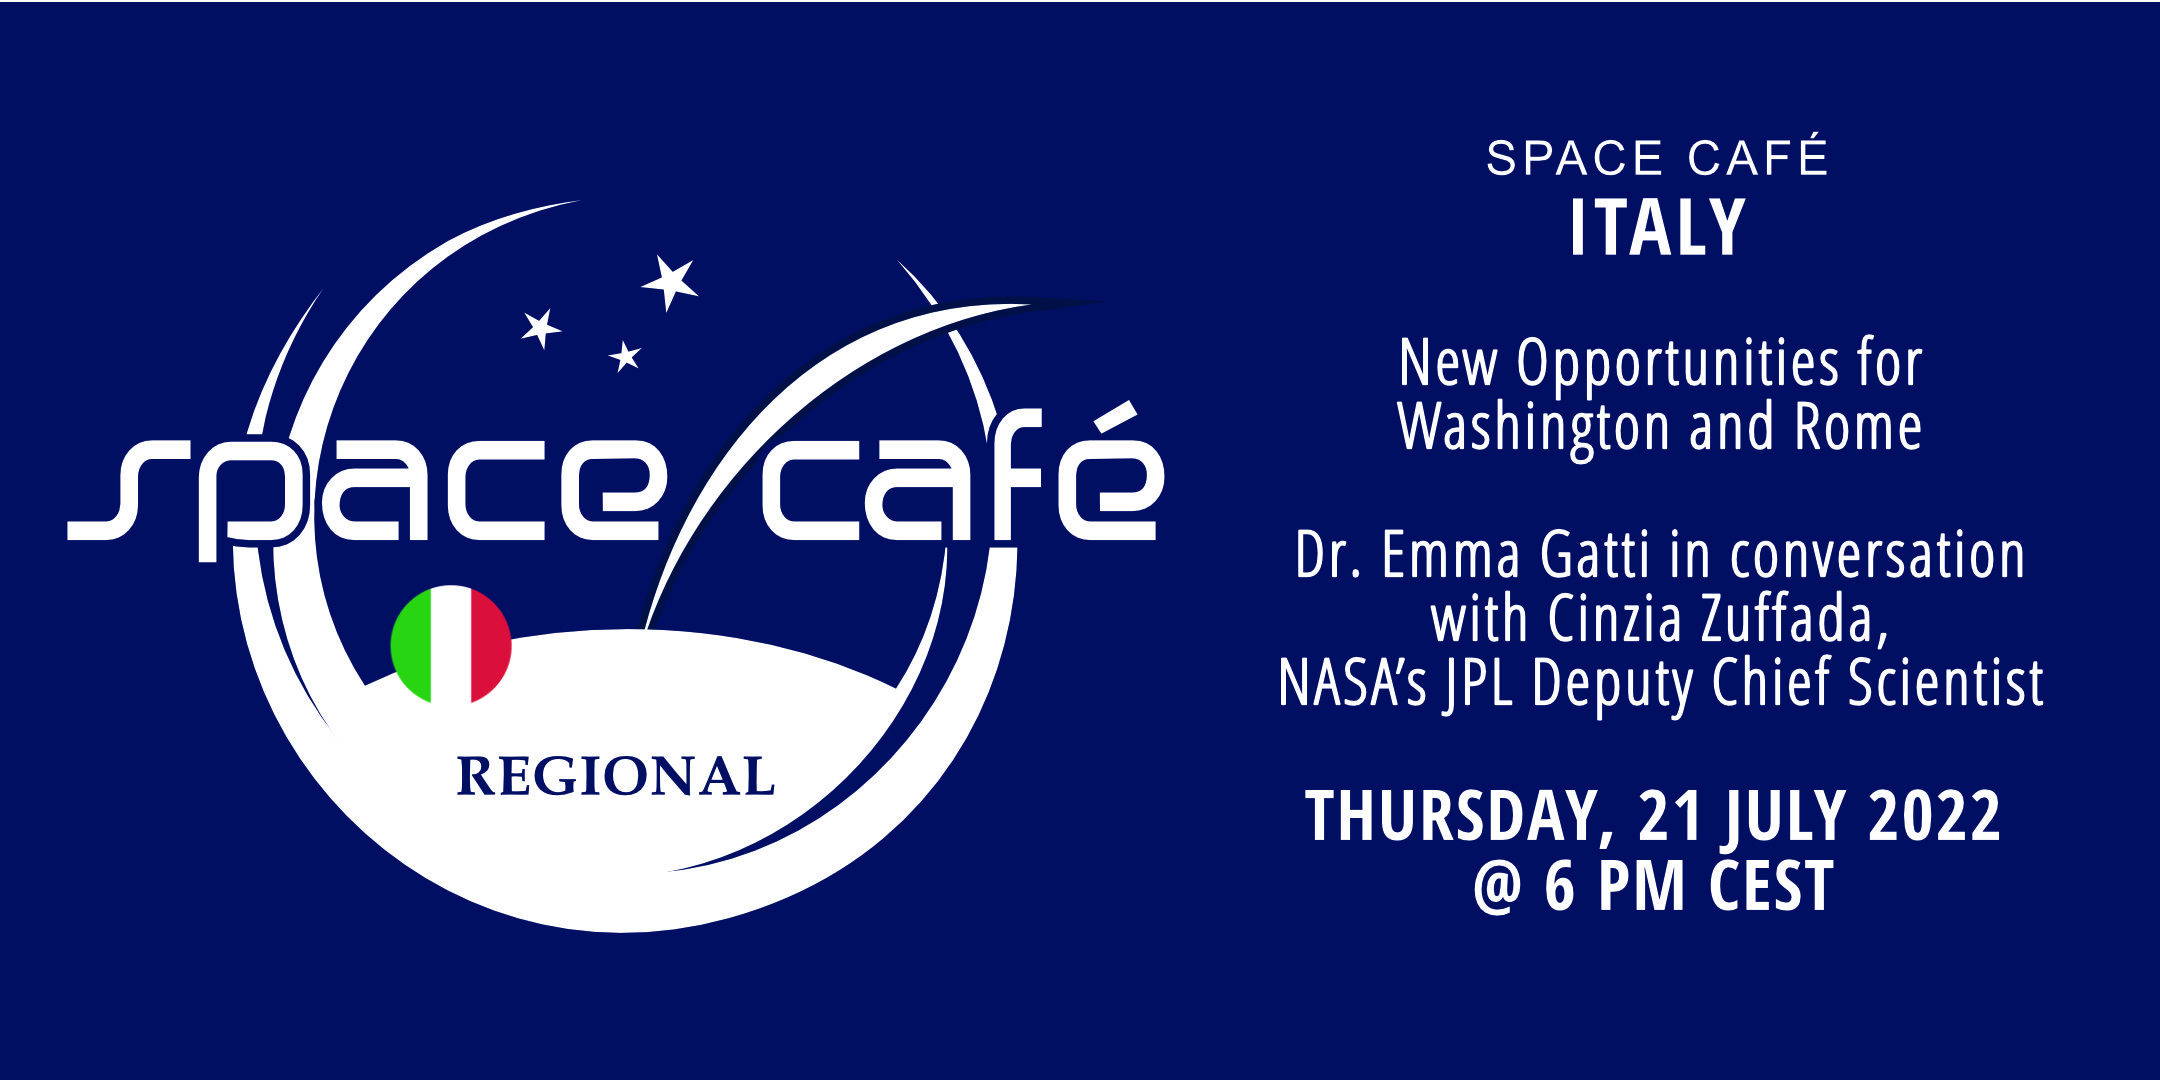 Zarejestruj się już dziś w naszej Space Café we Włoszech przez dr Emmę Gatti, 21 lipca 2022 r.